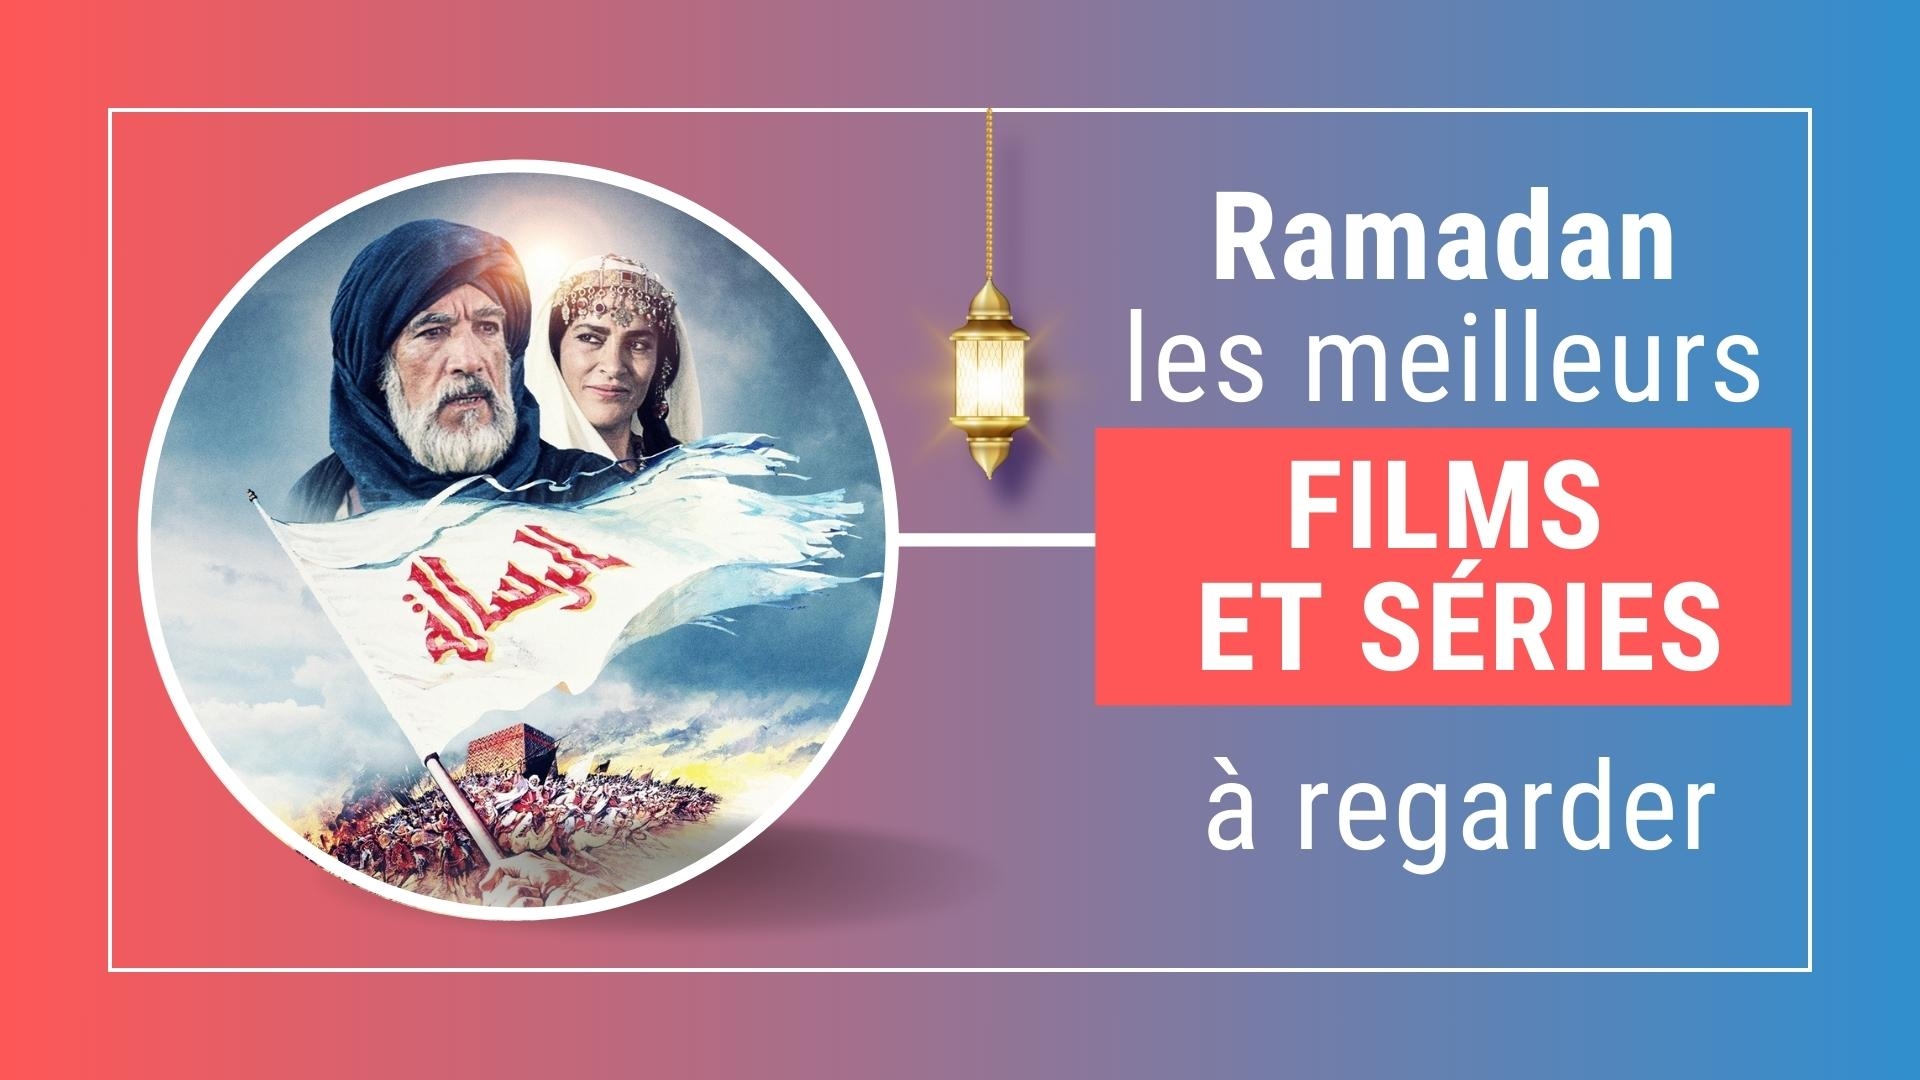 Les meilleurs films et séries islamiques à regarder pendant le ramadan